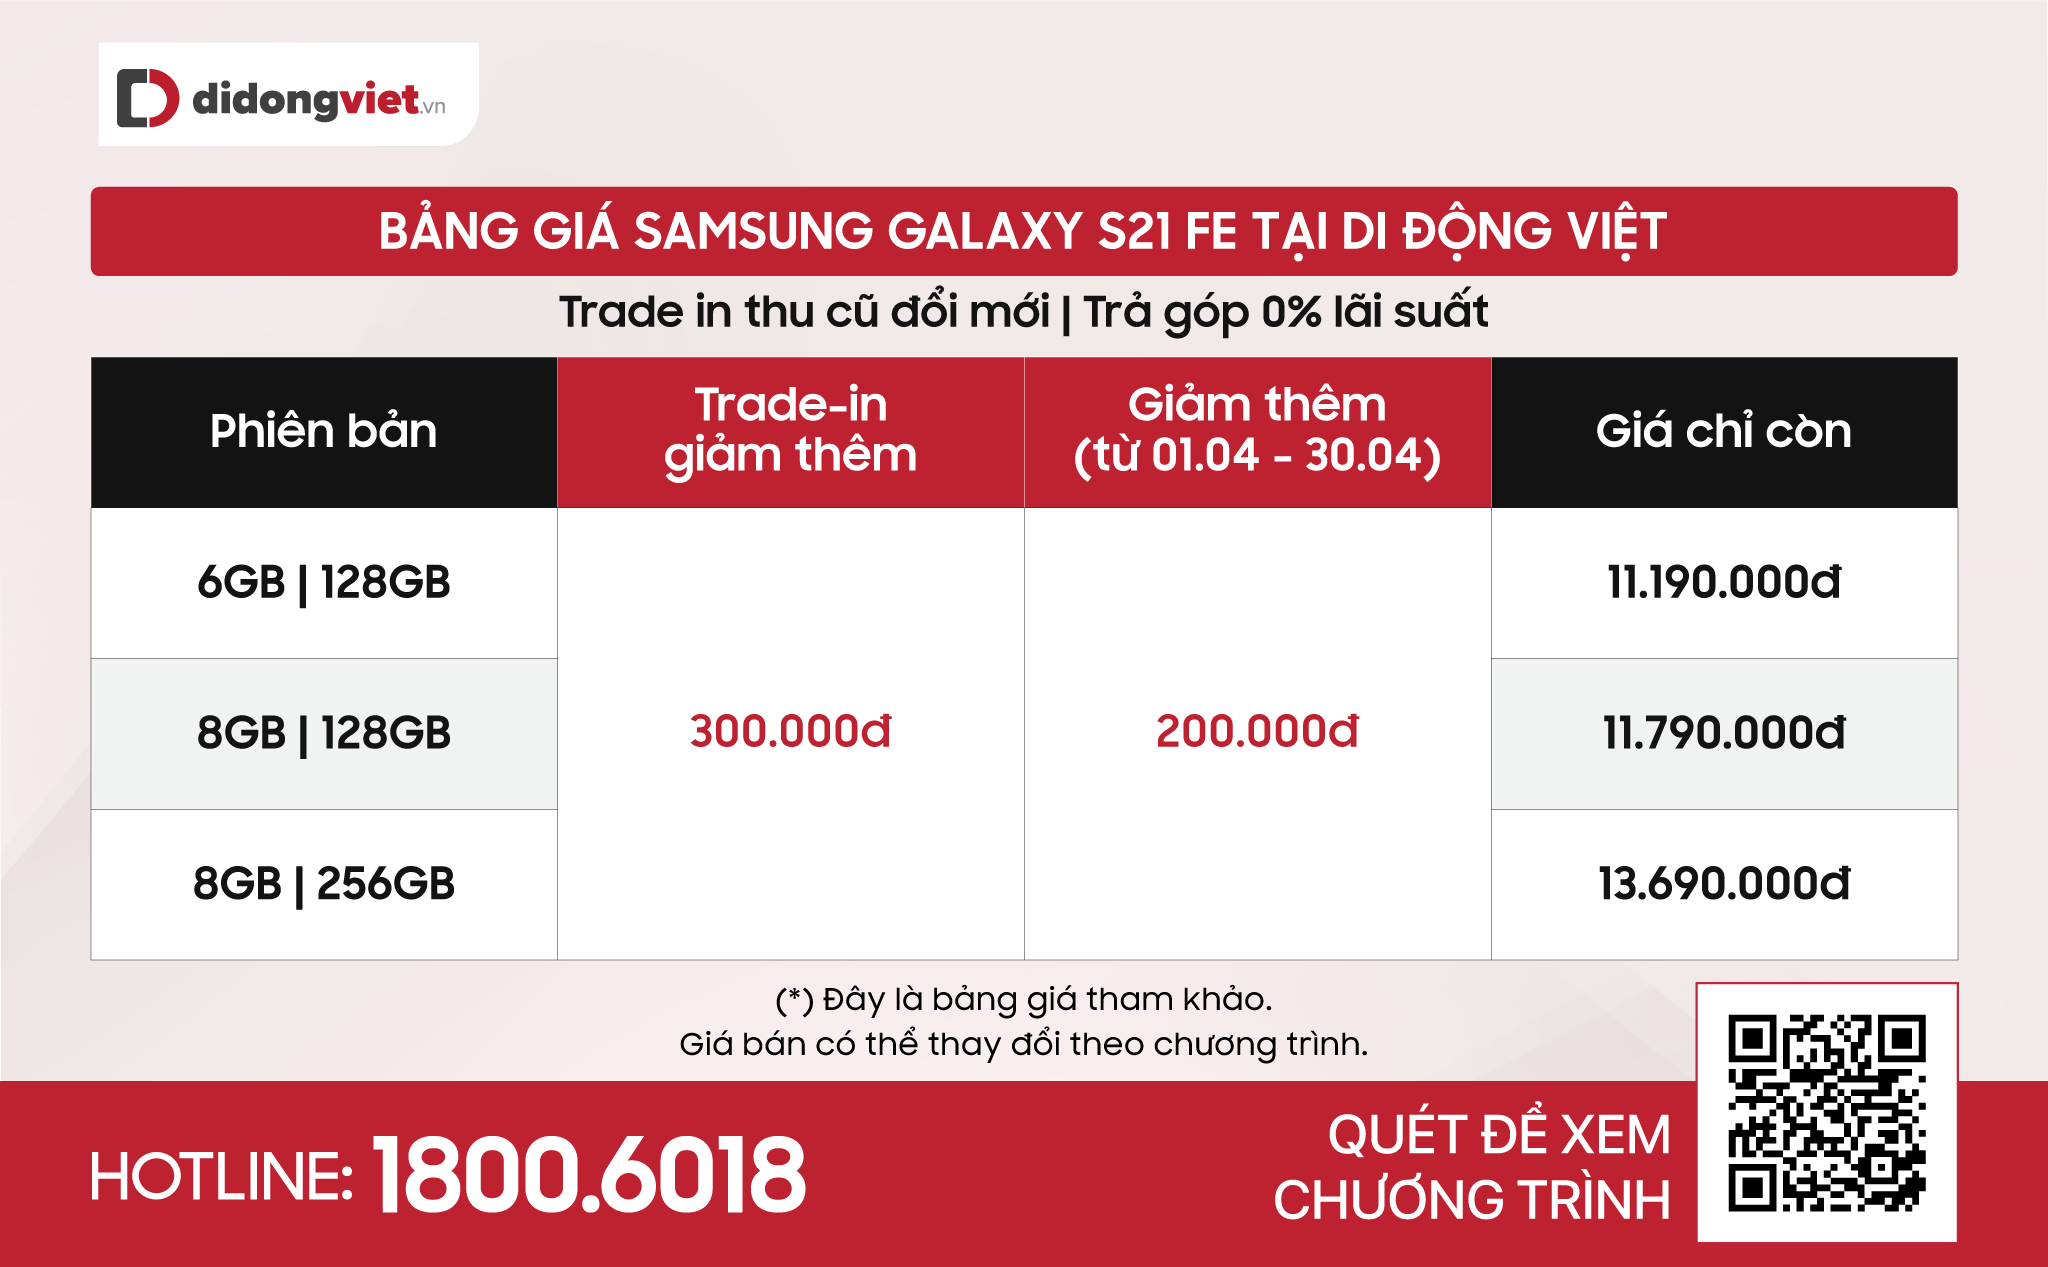 Samsung Galaxy S21 FE cập nhật giá bán mới rẻ hơn cả Galaxy A